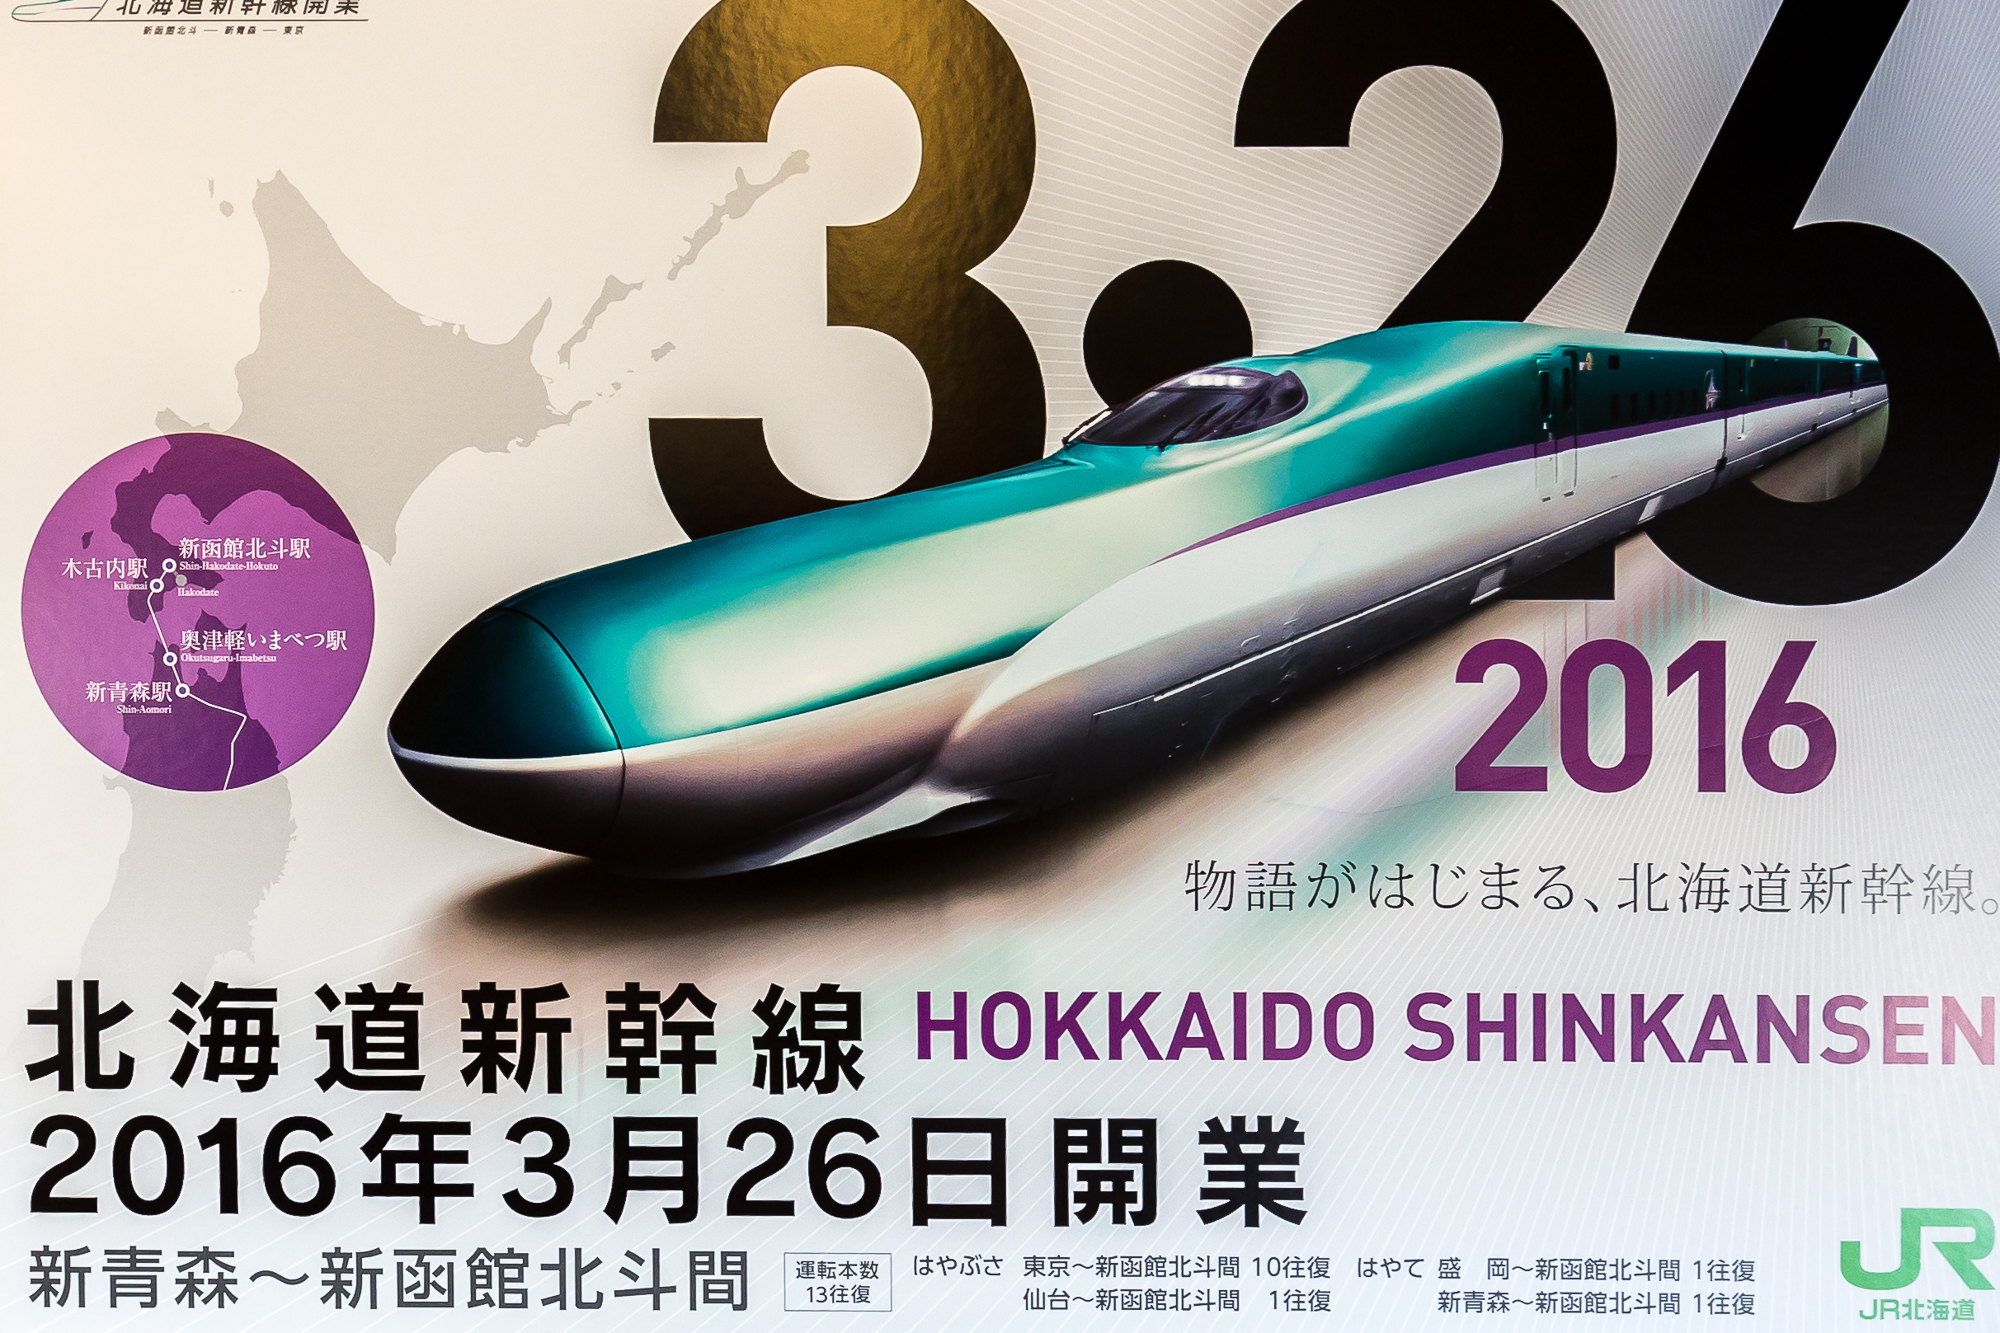 Hokkaido Shinkansen Poster